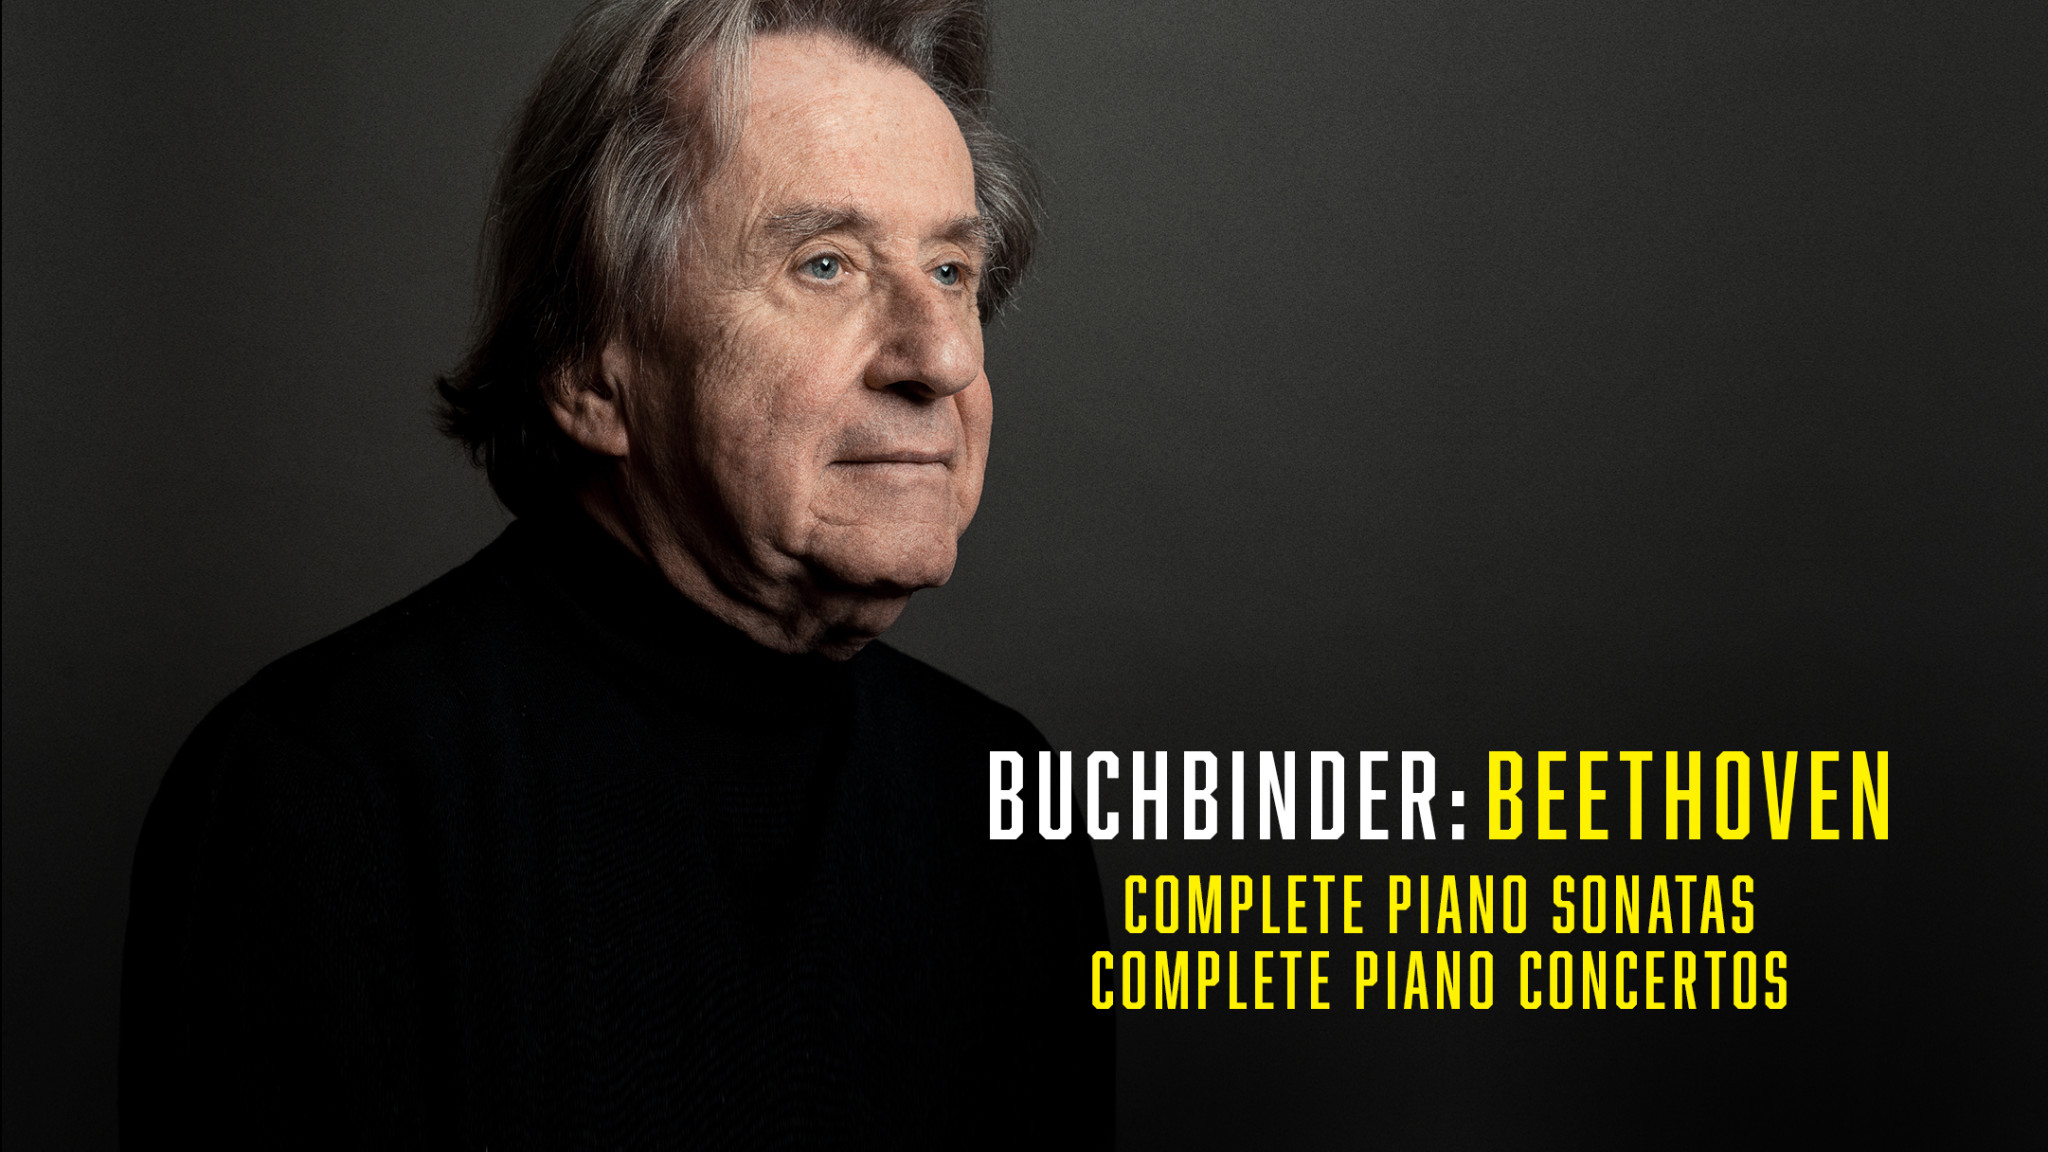 Austrian Maestro Rudolf Buchbinder presents Beethoven's Complete Concertos & Sonatas